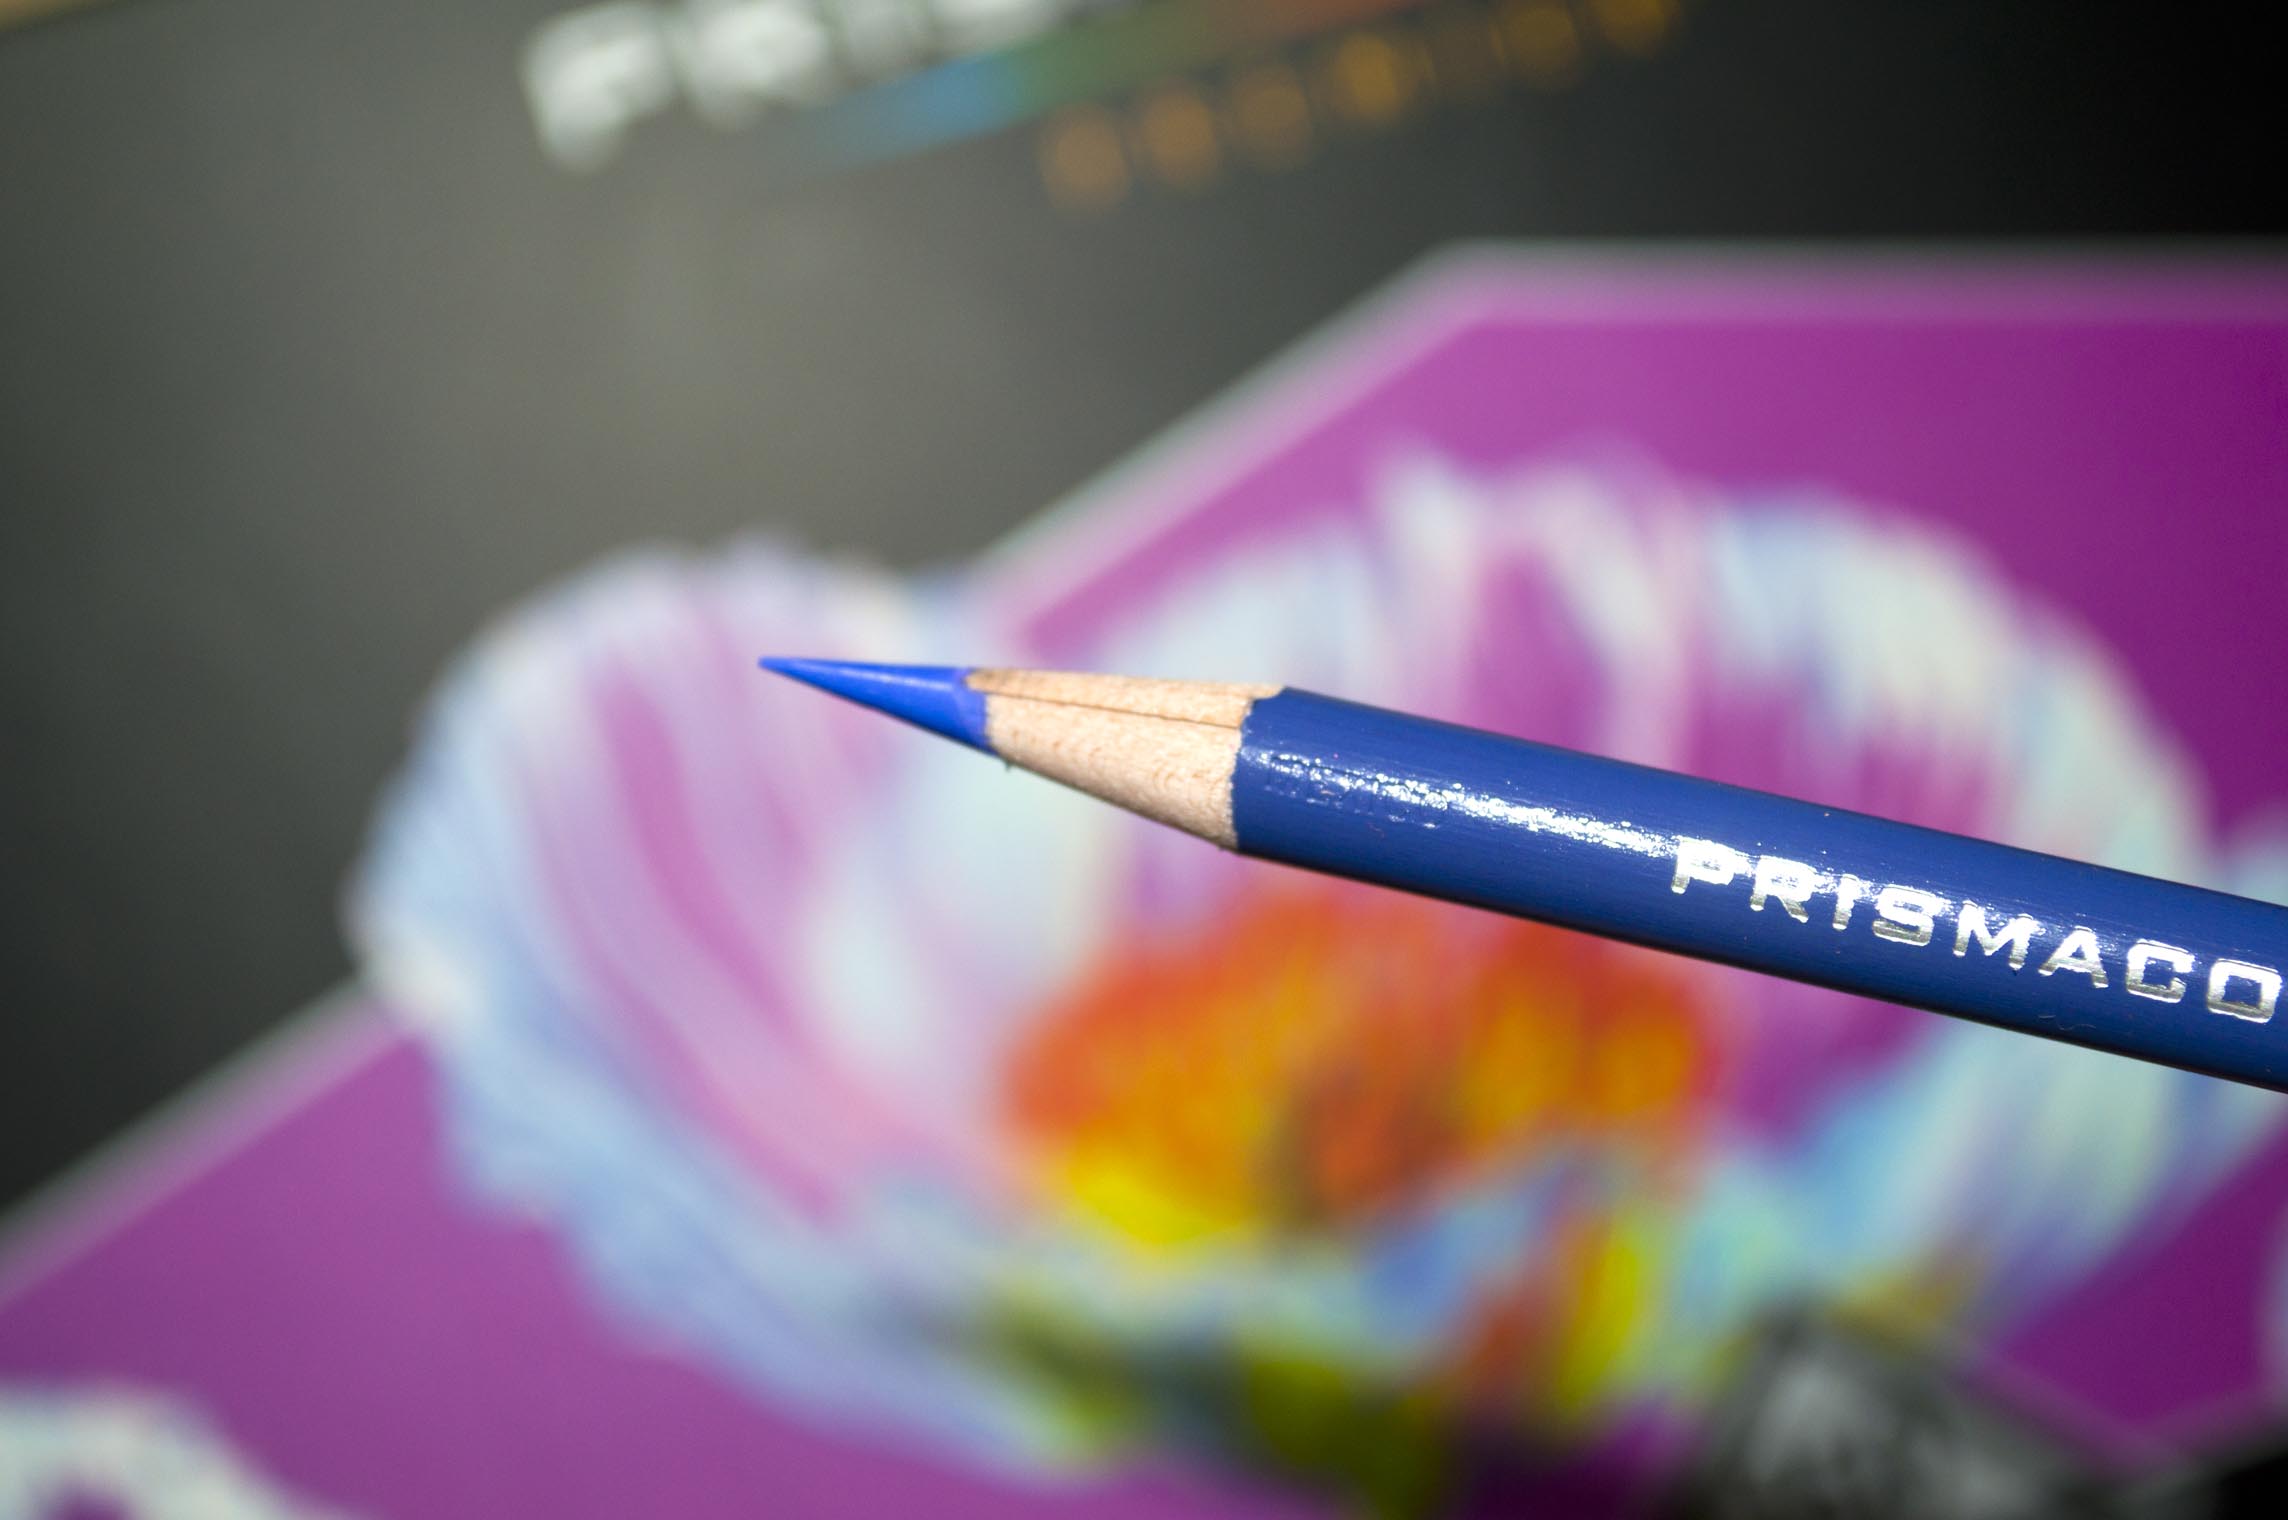 Prismacolor Pencil Color, Prismacolors Pencil Set